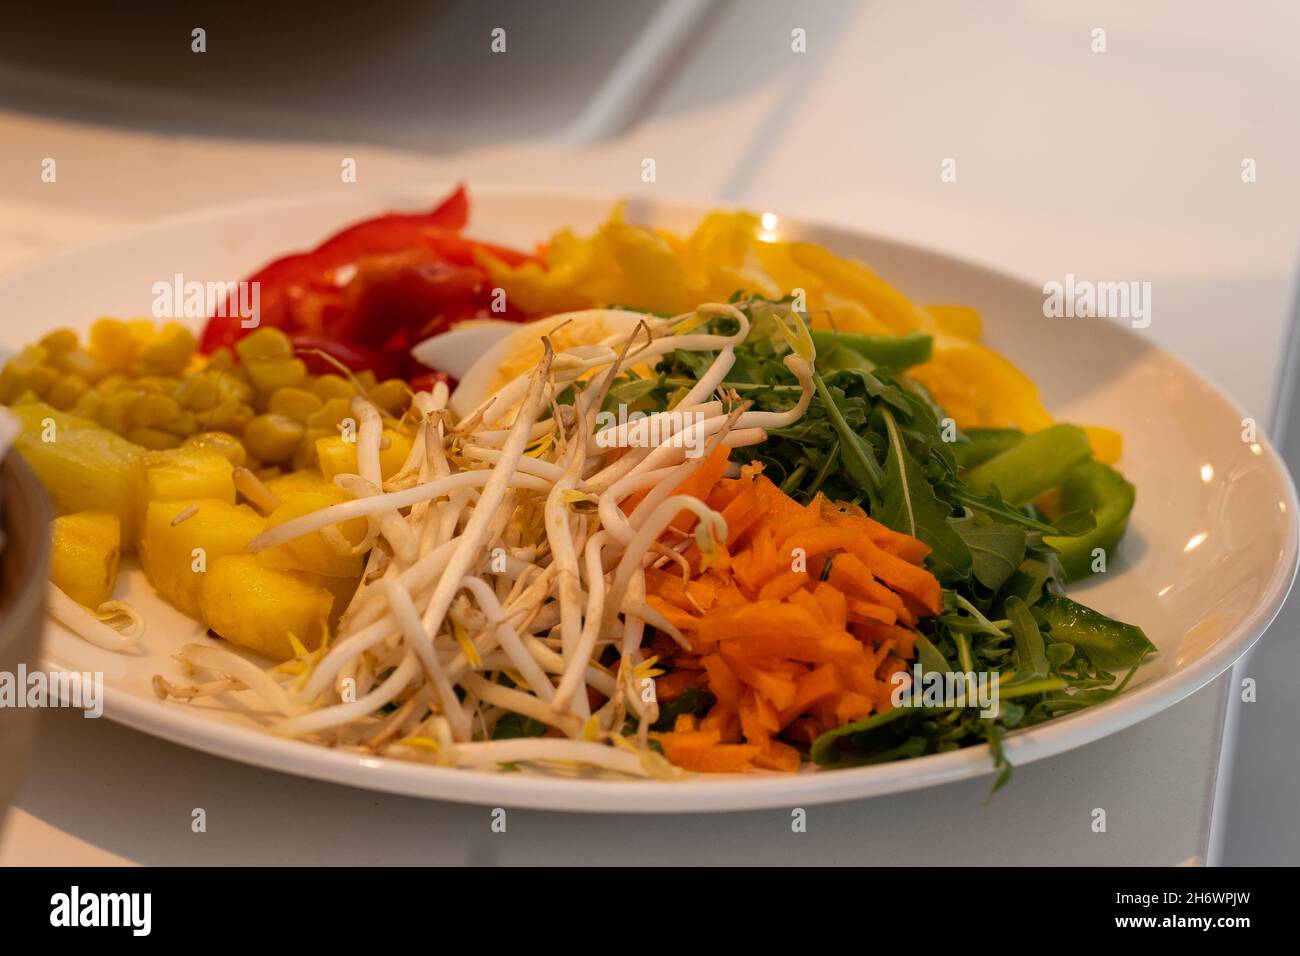 Salatplatte bereit zu essen.gesunde Ernährung Konzept. Stockfoto